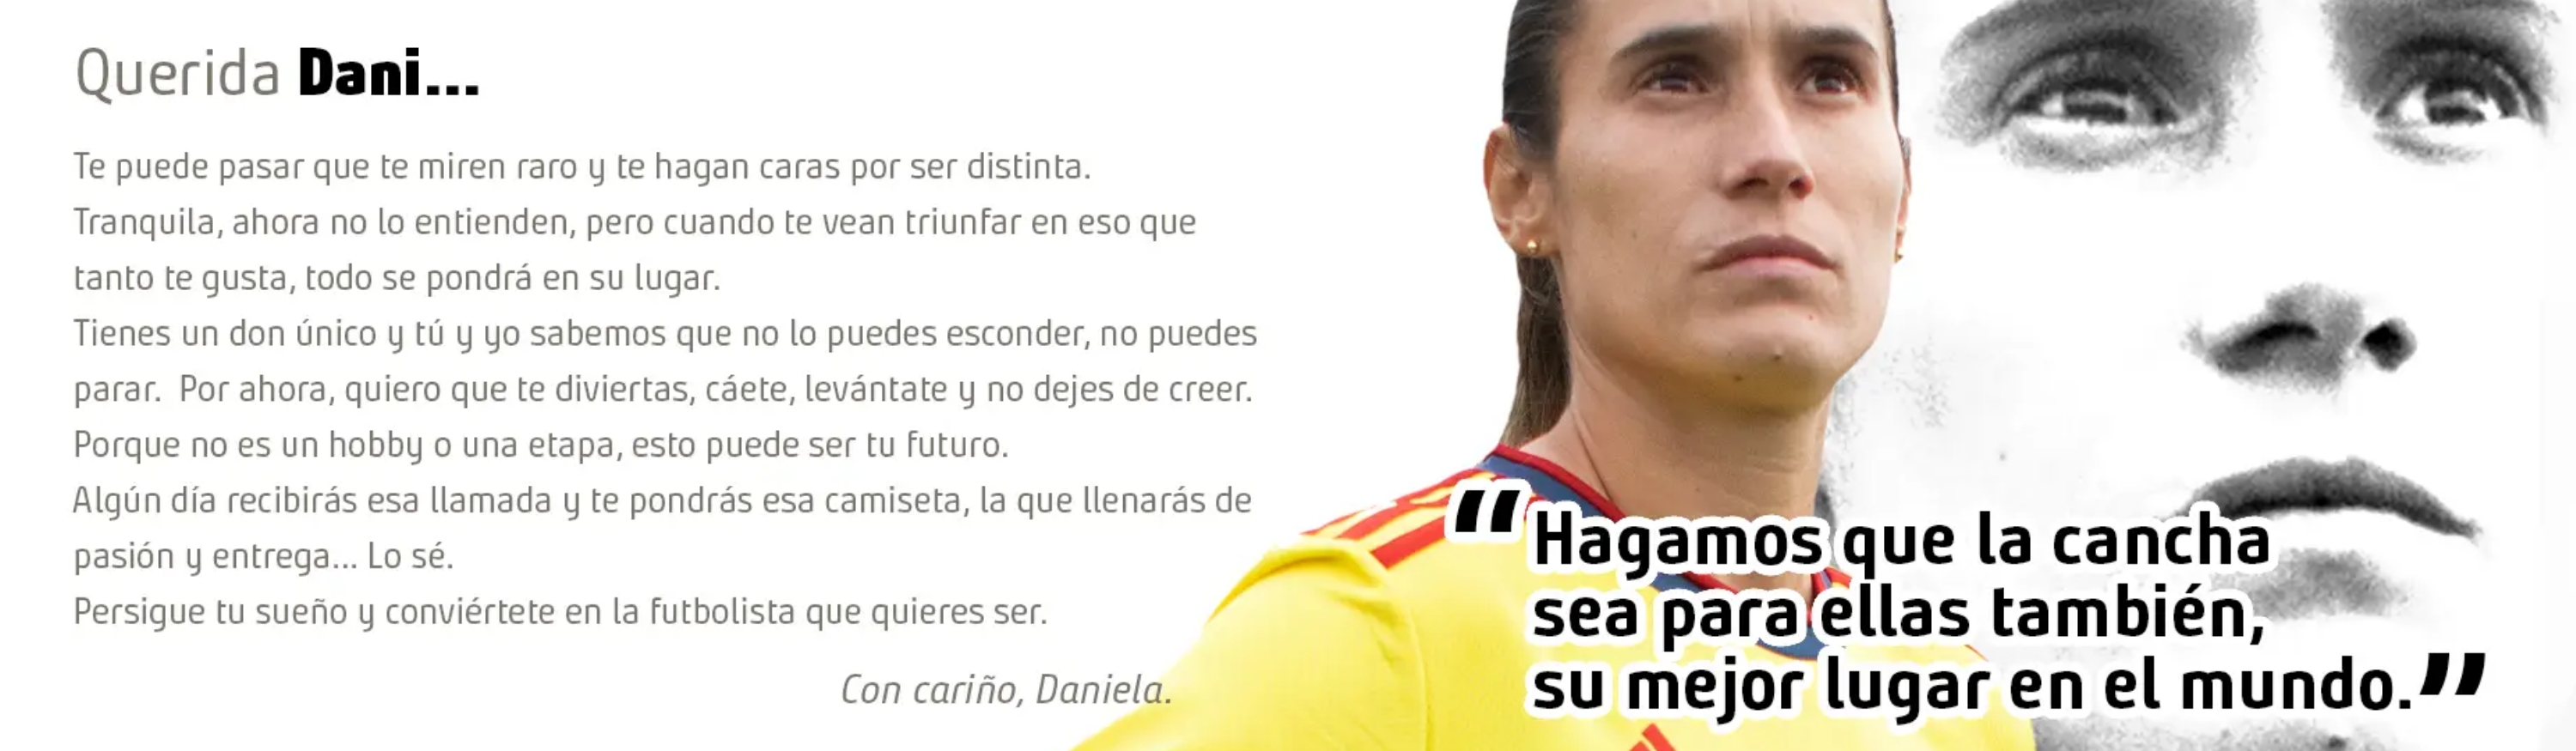 Futbol femenino cancha libre de estereotipos Daniela Montoya